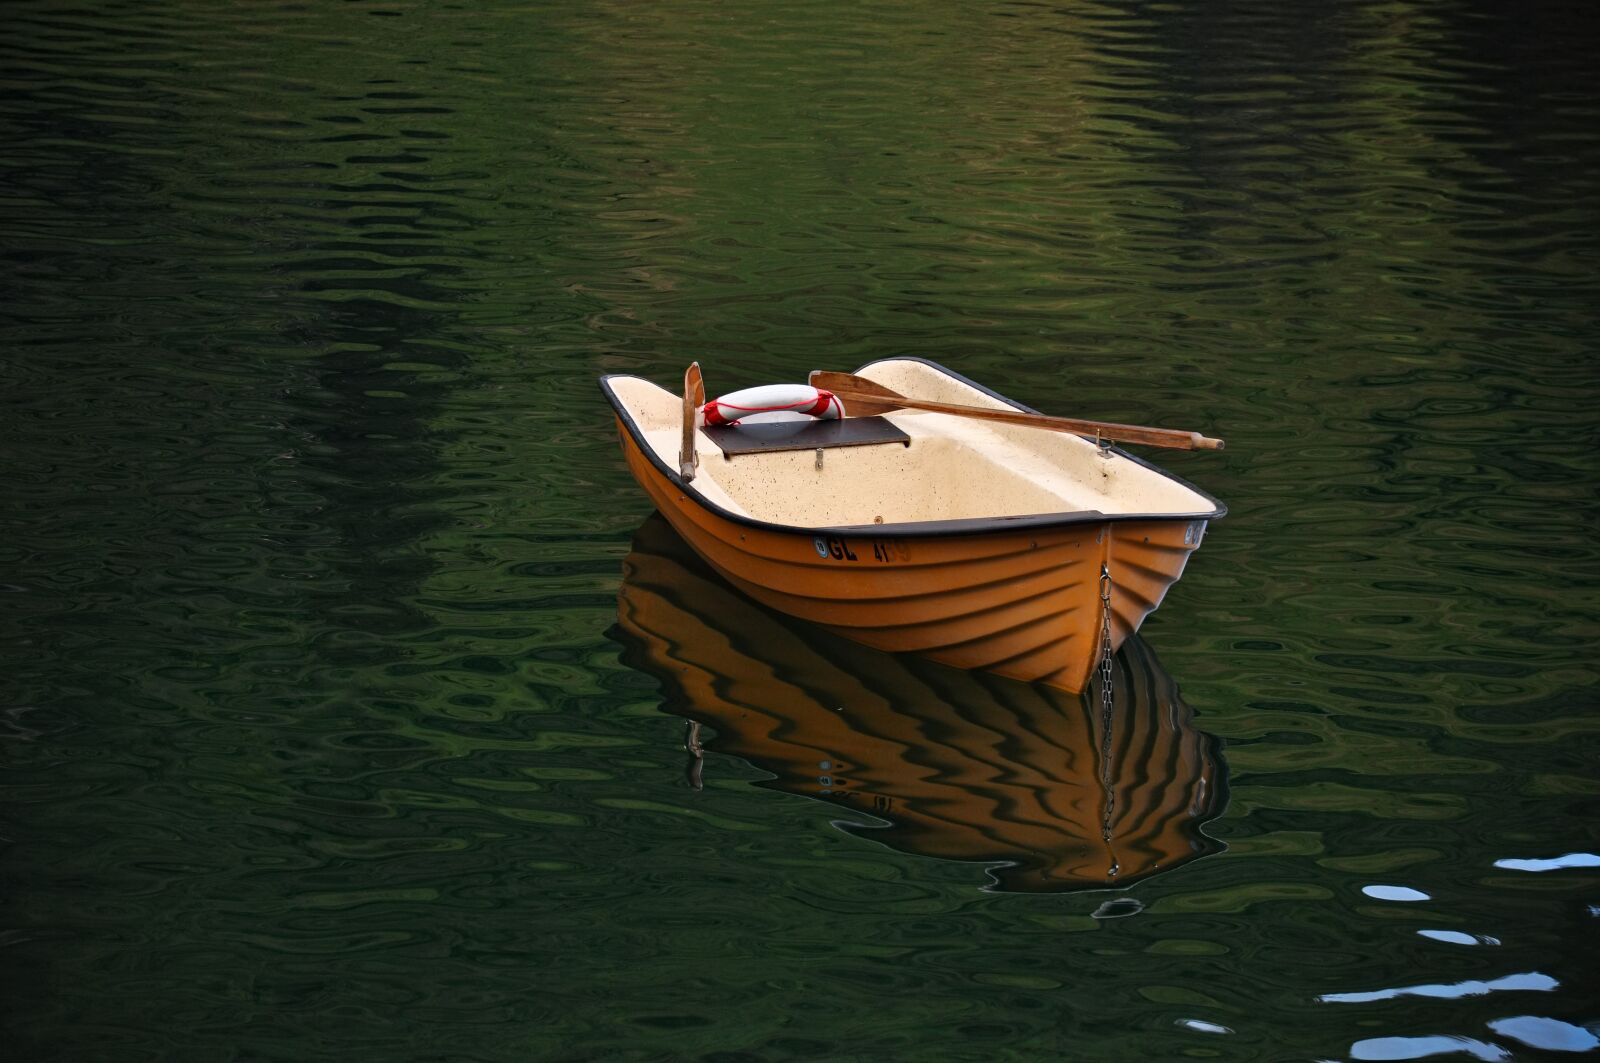 Nikon D90 sample photo. Boat, rowing boat, lake photography